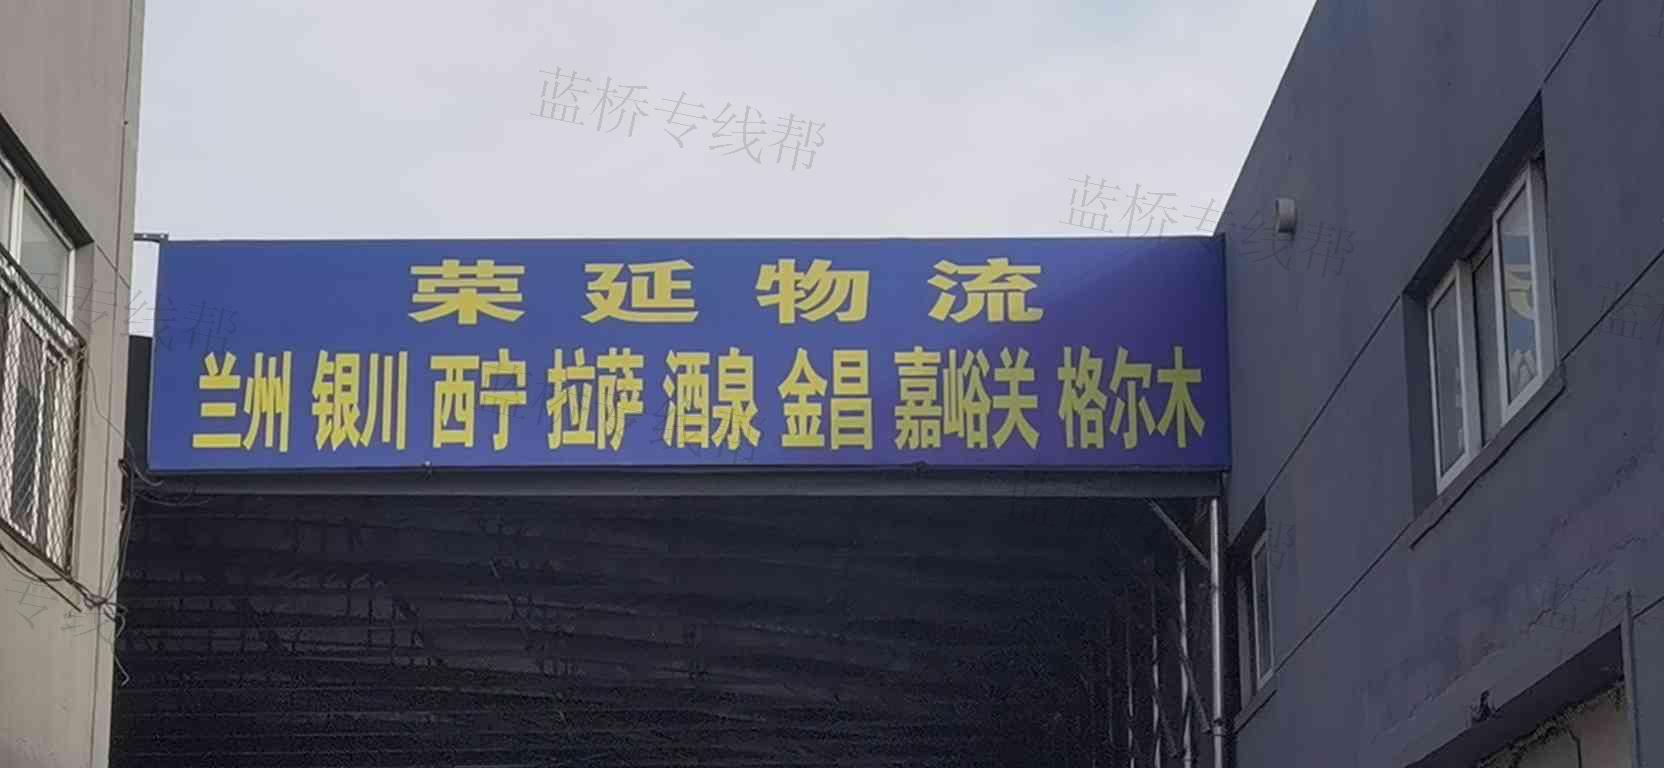 上海荣延物流有限公司